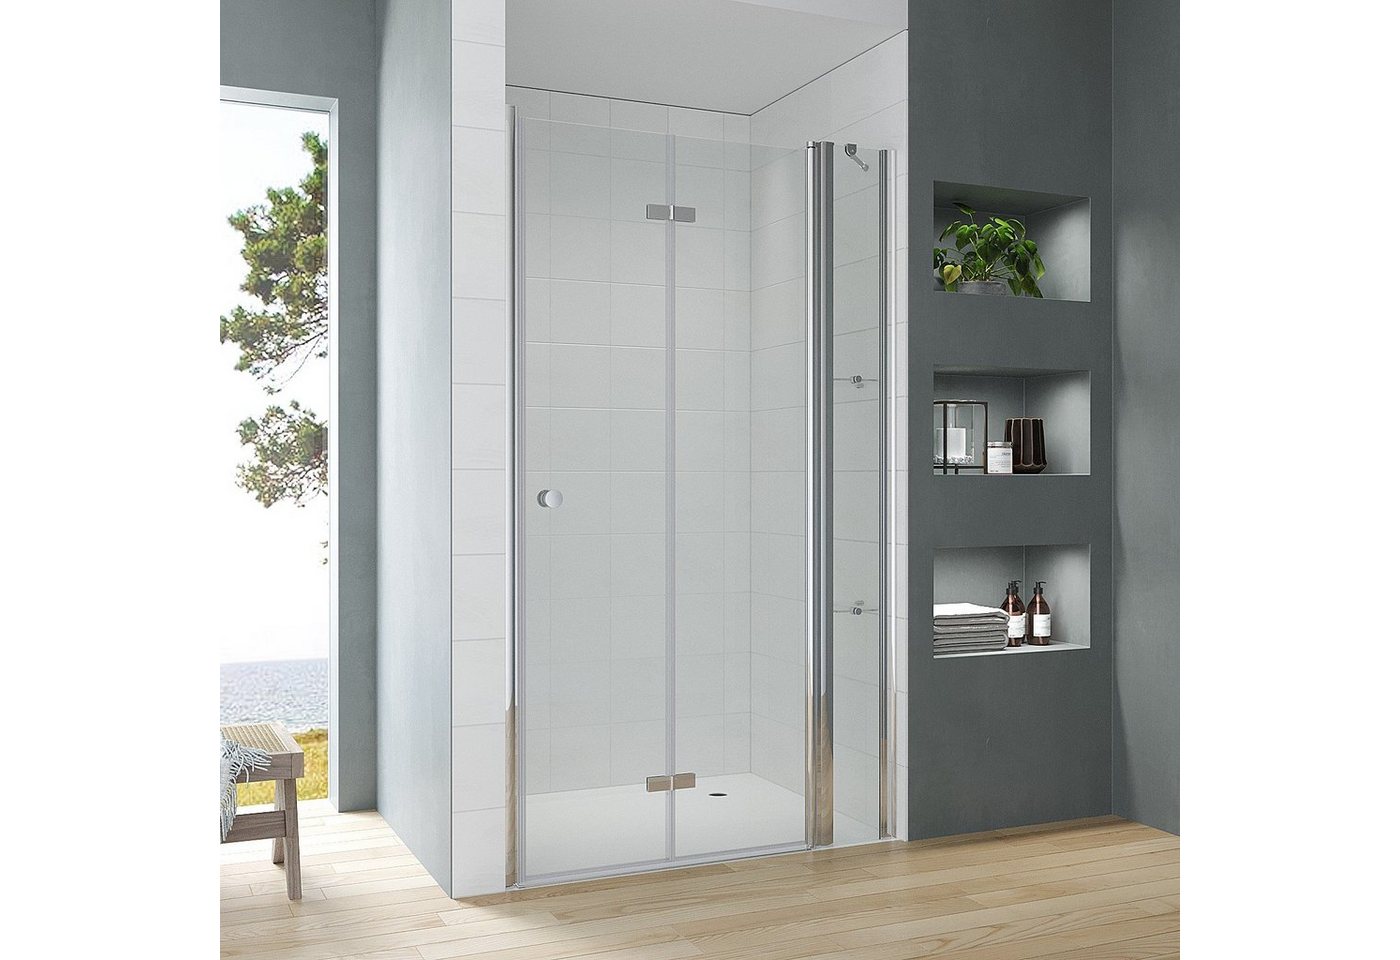 AQUABATOS Dusch-Falttür Begehbare Dusche faltbar Duschtür in Nische mit Festteil Nischentür, 90x187 cm, Einscheiben-Sicherheitsglas (ESG) 5 mm von AQUABATOS